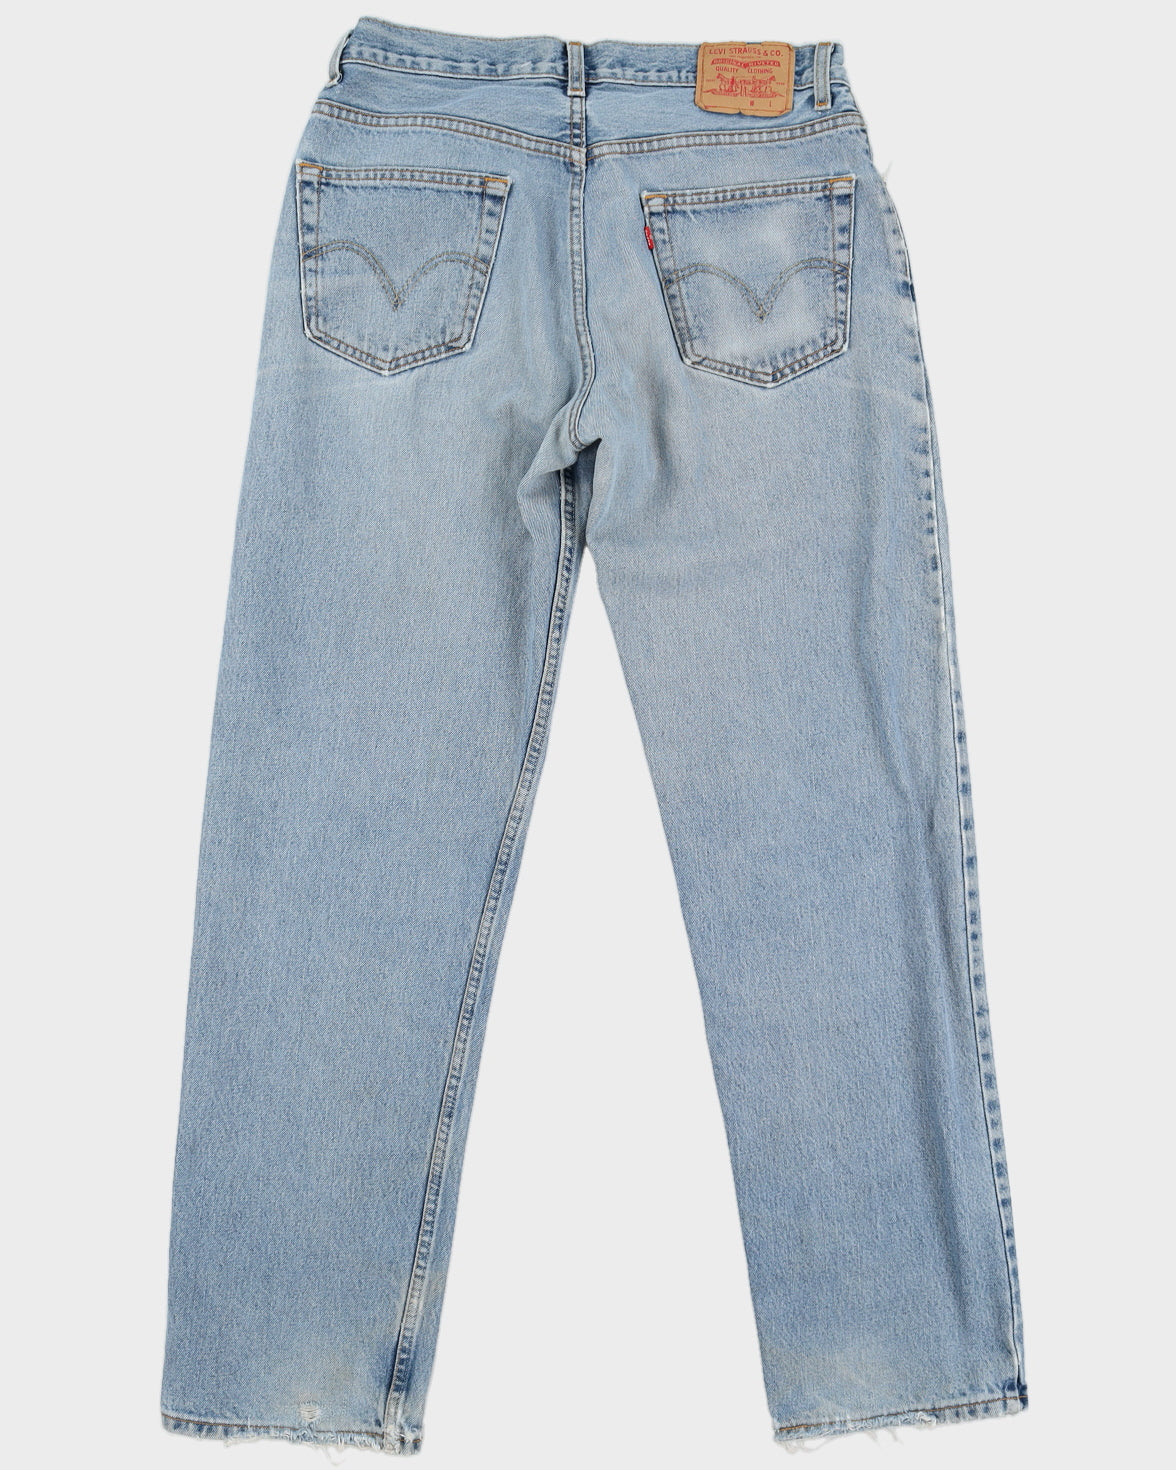 Vintage Levi's Light Wash 505 Denim Jeans - W34 L34